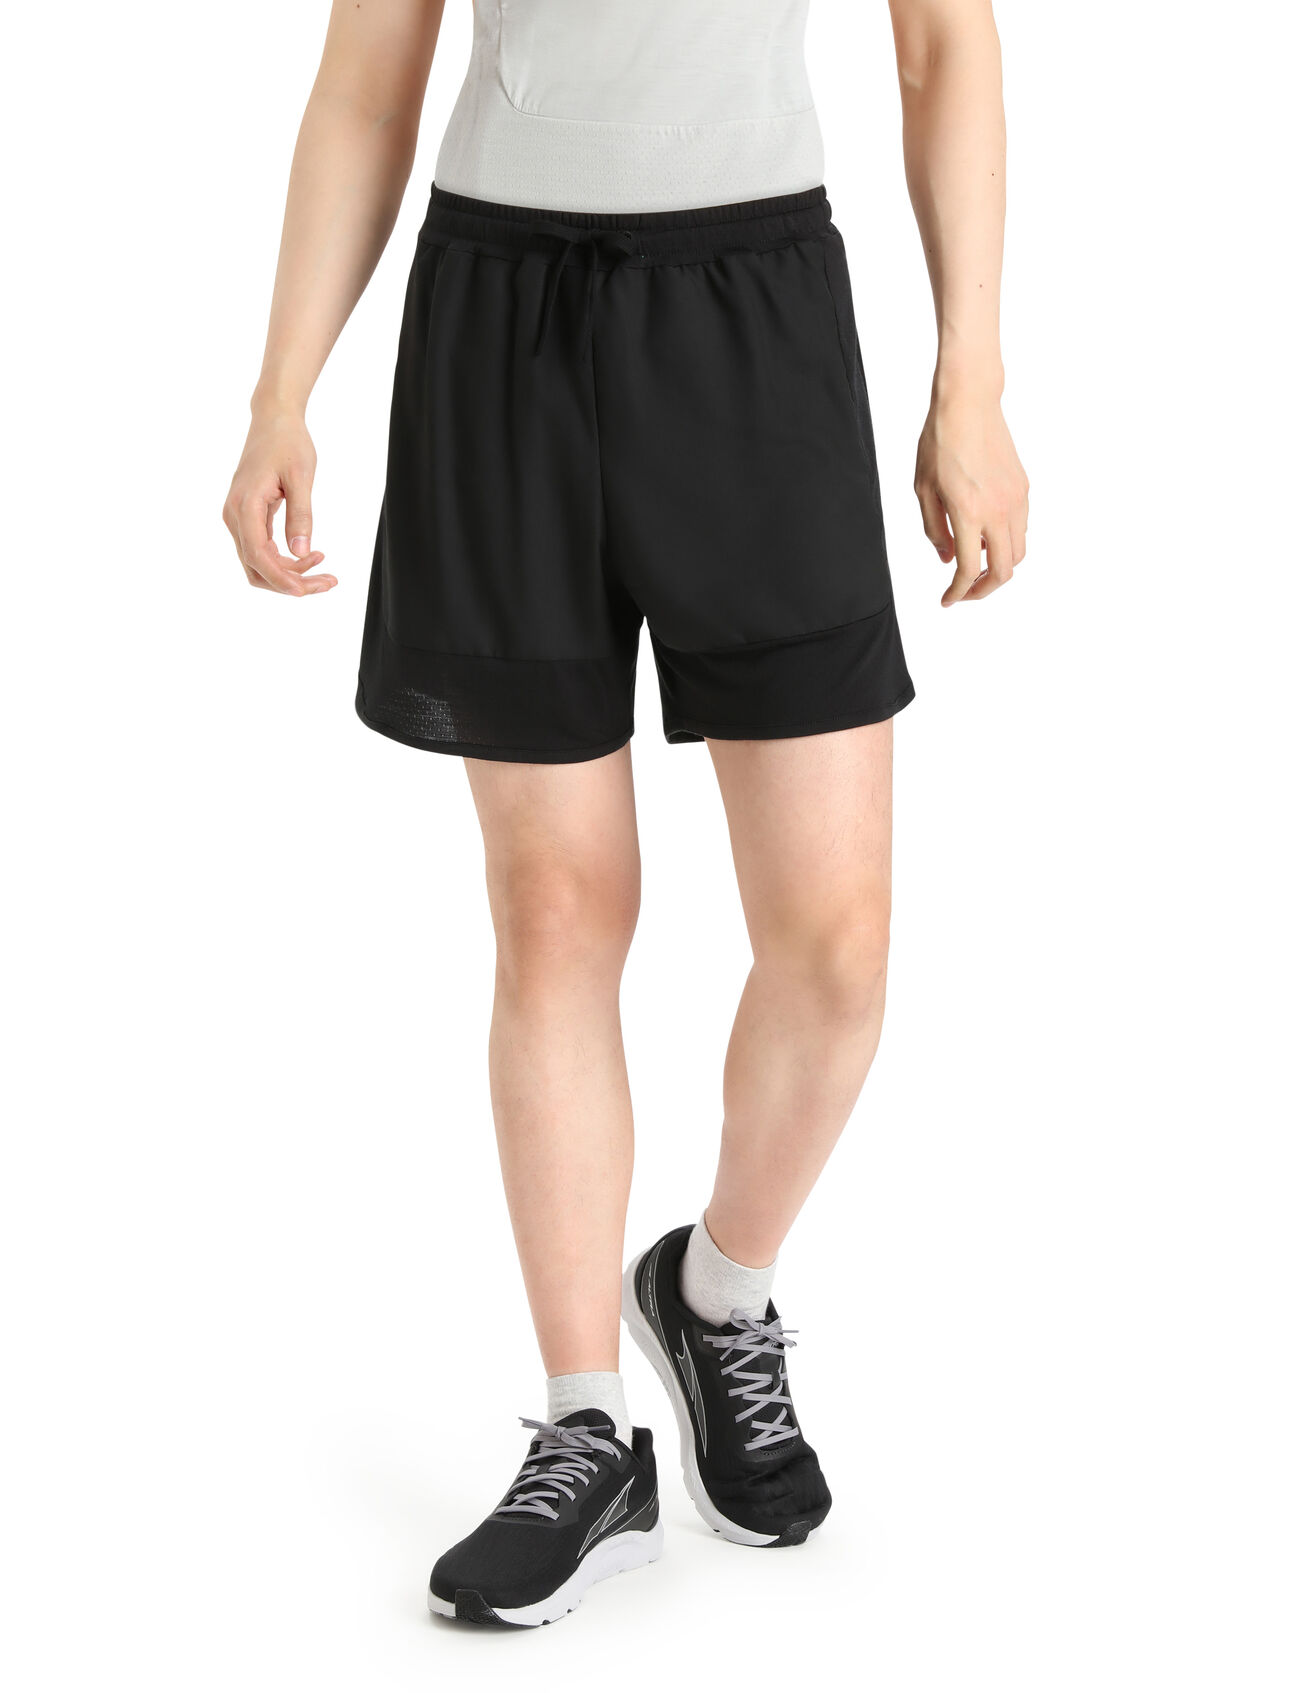 ZoneKnit™ Merino Shorts Herren Eine leichtgewichtige, hochatmungsaktive Shorts zum Laufen, die ZoneKnit™ Shorts kombiniert unser Cool-Lite™ Jersey mit nach dem Bodymapping-Verfahren platzierten Einsätzen aus Cool-Lite™ Eyeletmesh, um die Regulierung des Körperklimas zu gewährleisten.